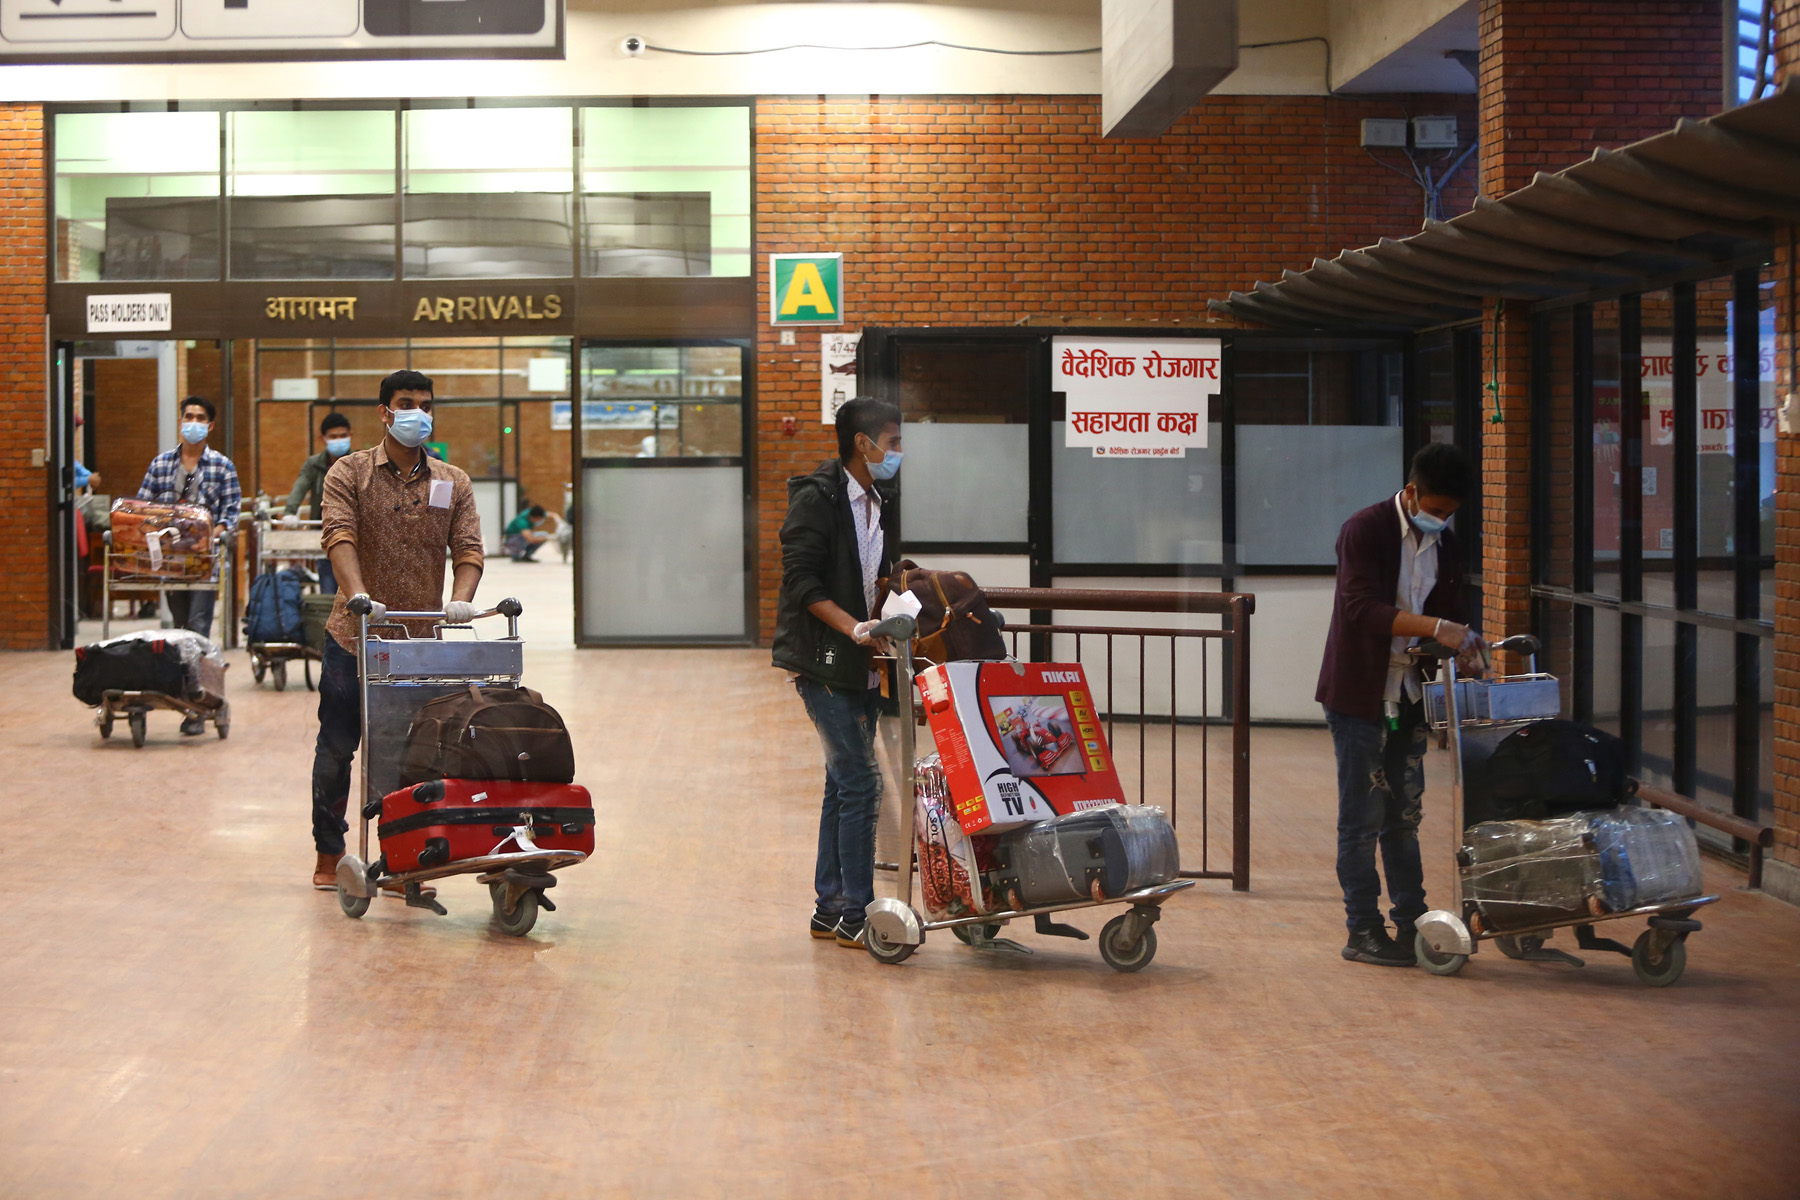 3,108 stranded Nepalis return home in three weeks